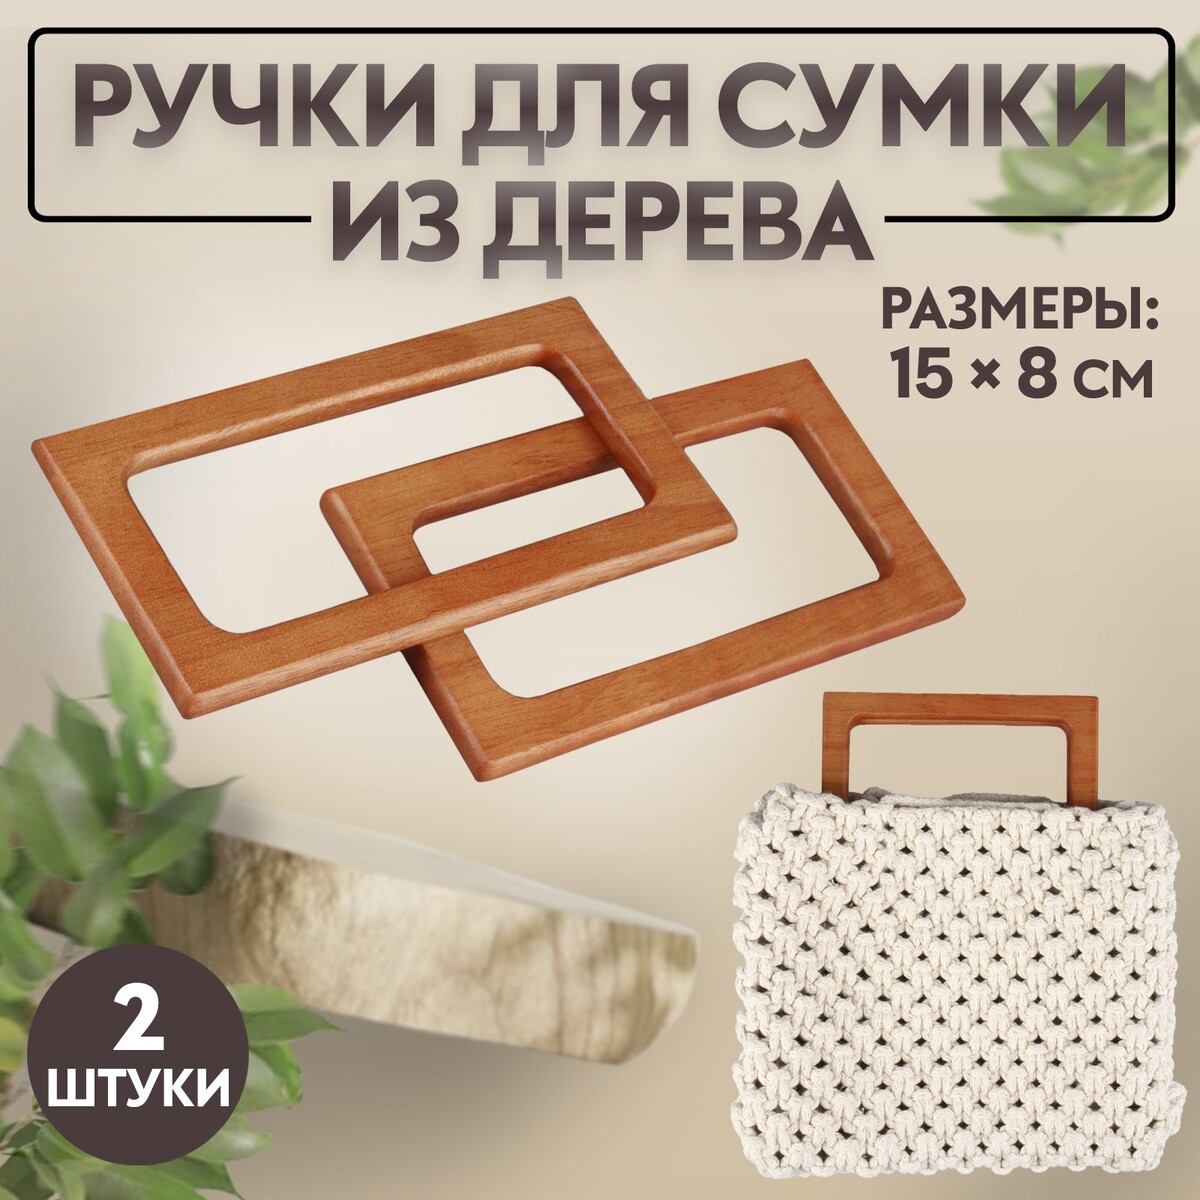 Ручки для сумки деревянные, 15 × 8 см, 2 шт, цвет светло-коричневый краски для моделизма zvezda светло коричневый